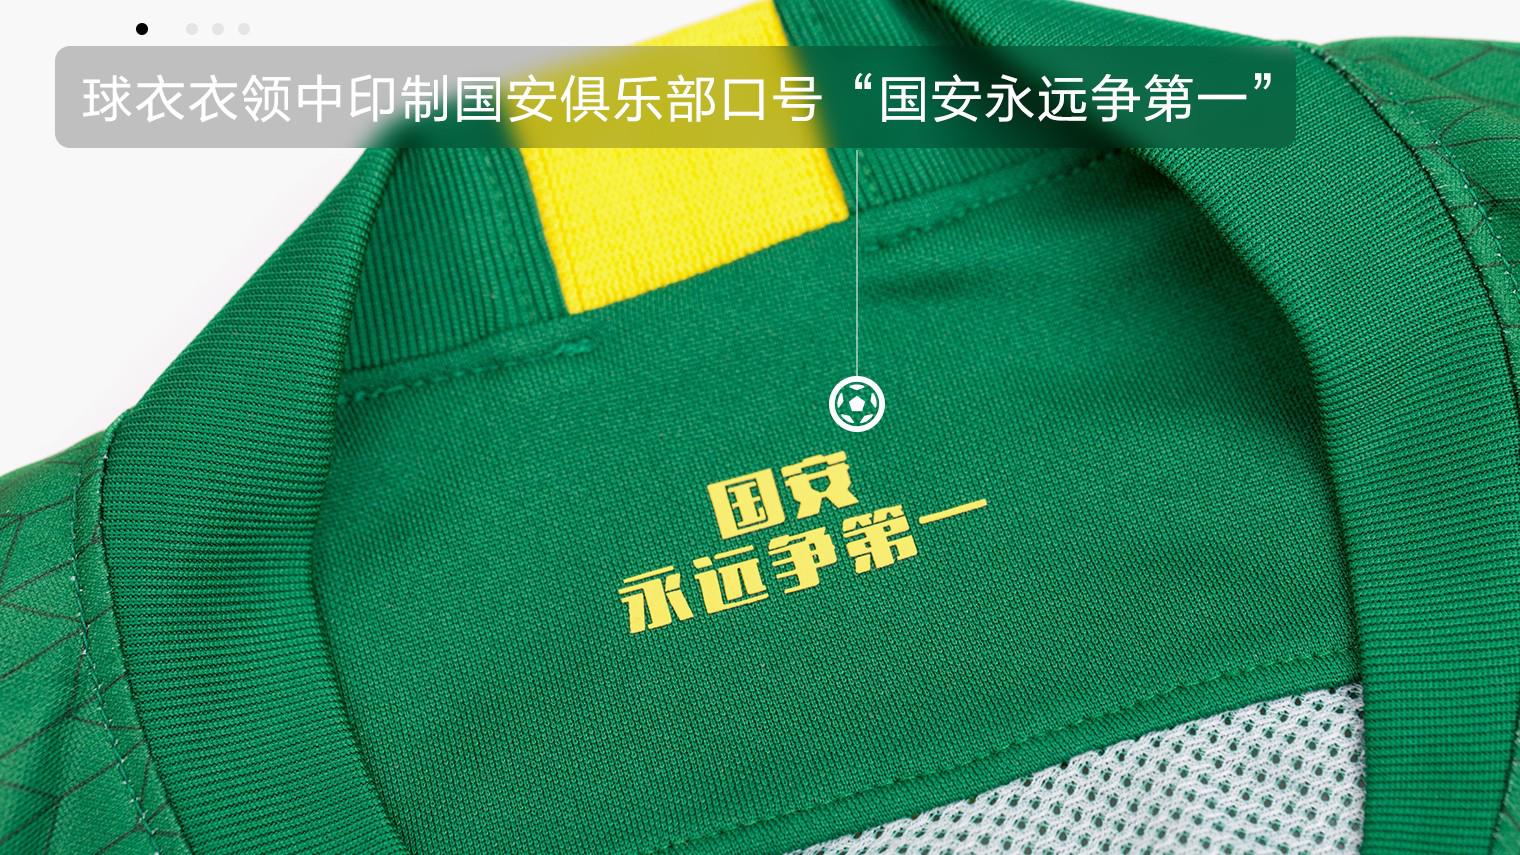 nike中超复刻球衣 Nike中超2020赛季北京国安主场球衣更衣室版(11)